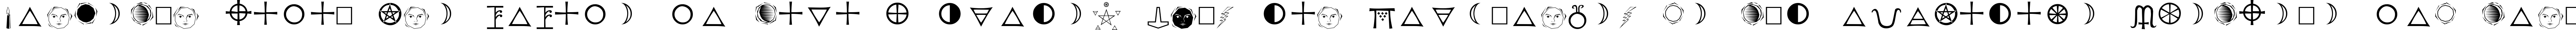 Пример написания шрифтом Astrological текста на испанском